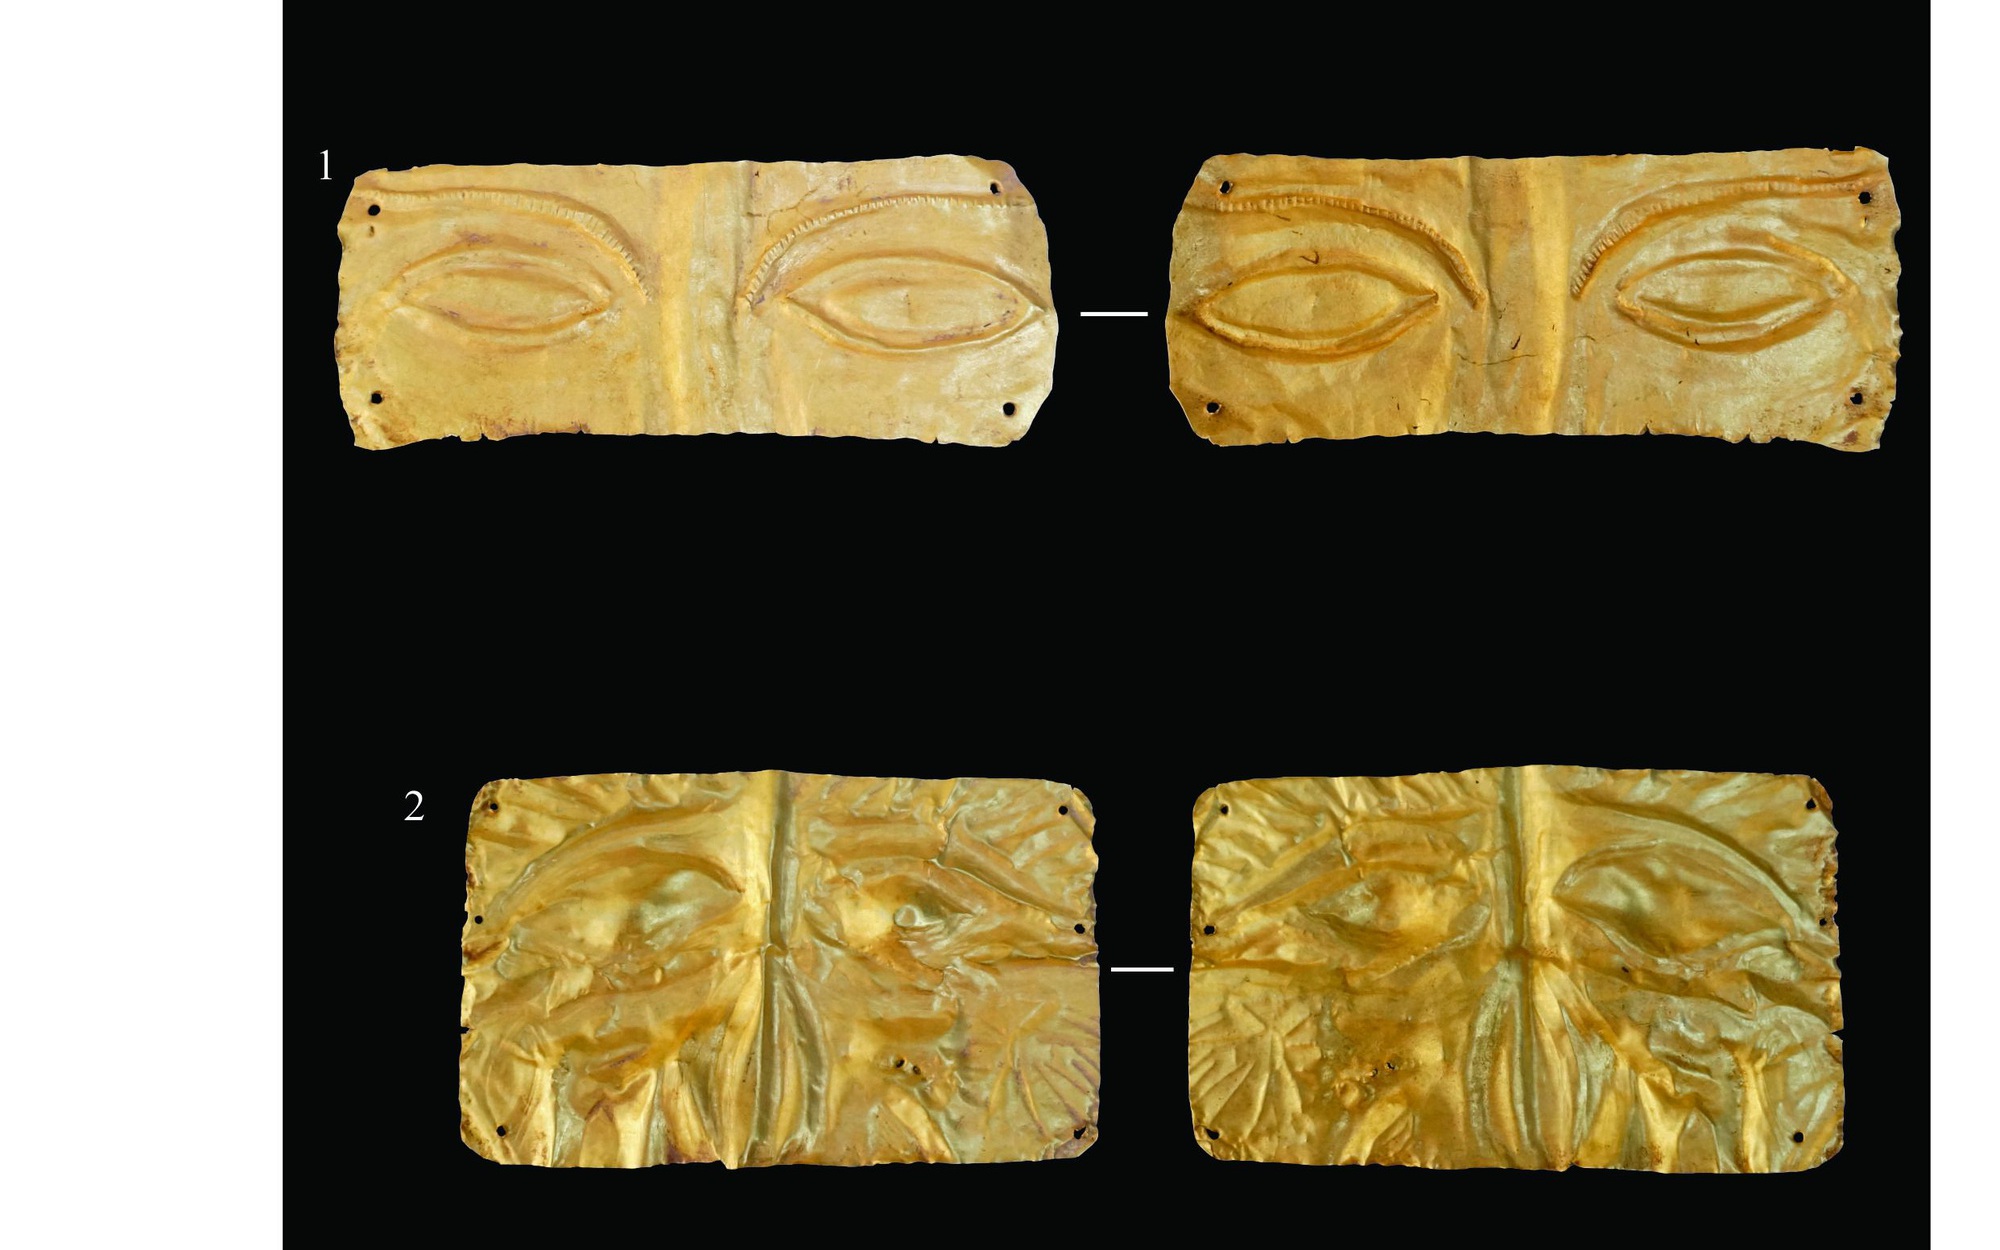 Bảo vật quốc gia khai quật tại các mộ táng ở Bà Rịa-Vũng Tàu, cuốn hút nhất là mặt nạ vàng